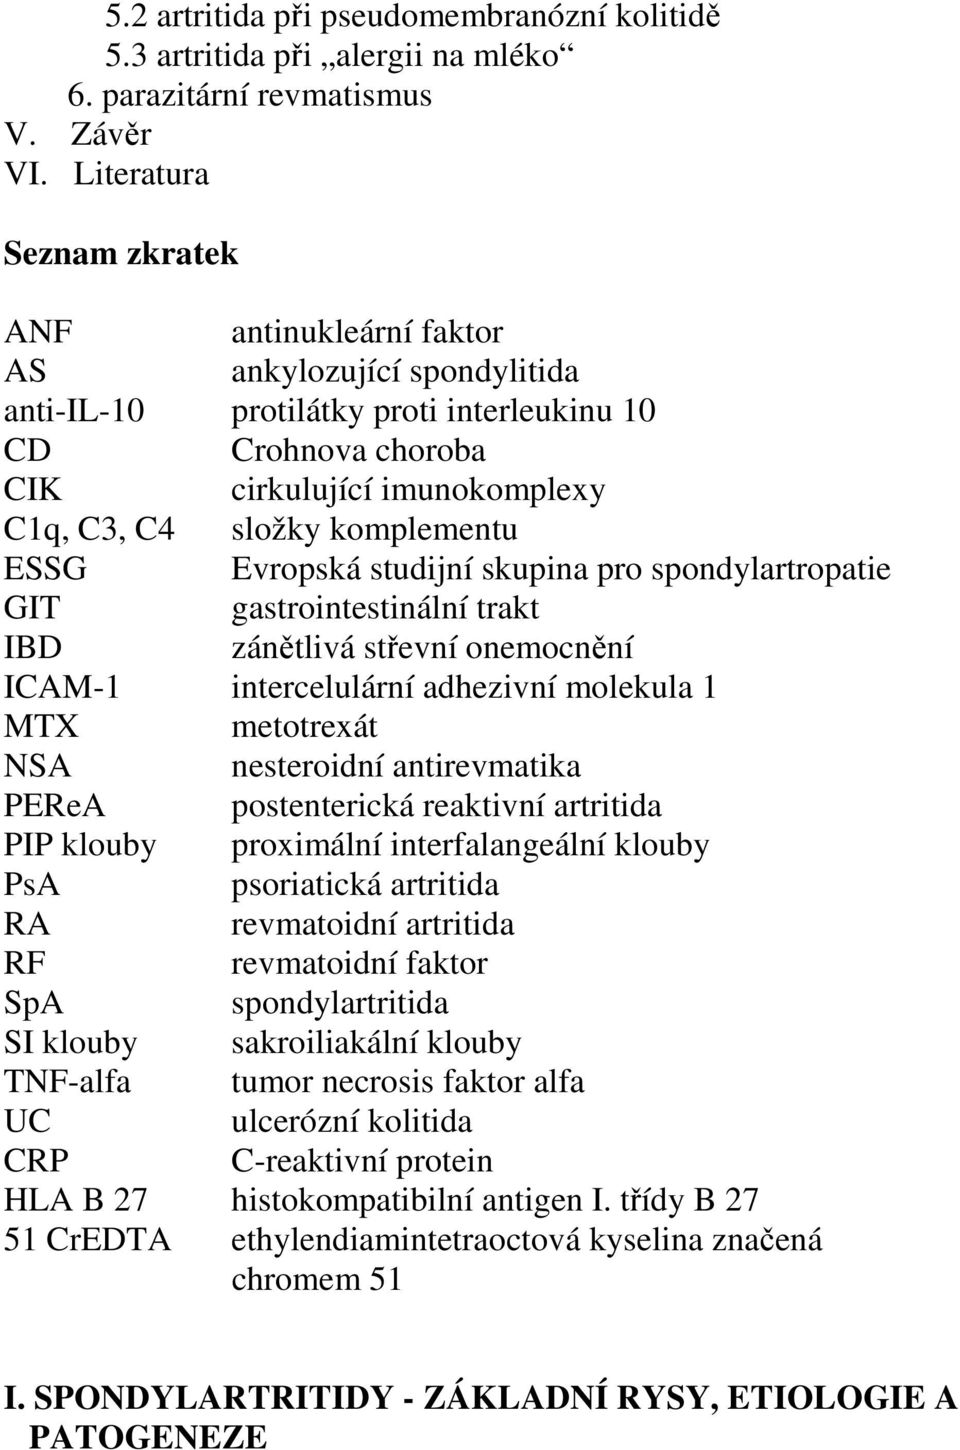 komplementu ESSG Evropská studijní skupina pro spondylartropatie GIT gastrointestinální trakt IBD zánětlivá střevní onemocnění ICAM-1 intercelulární adhezivní molekula 1 MTX metotrexát NSA